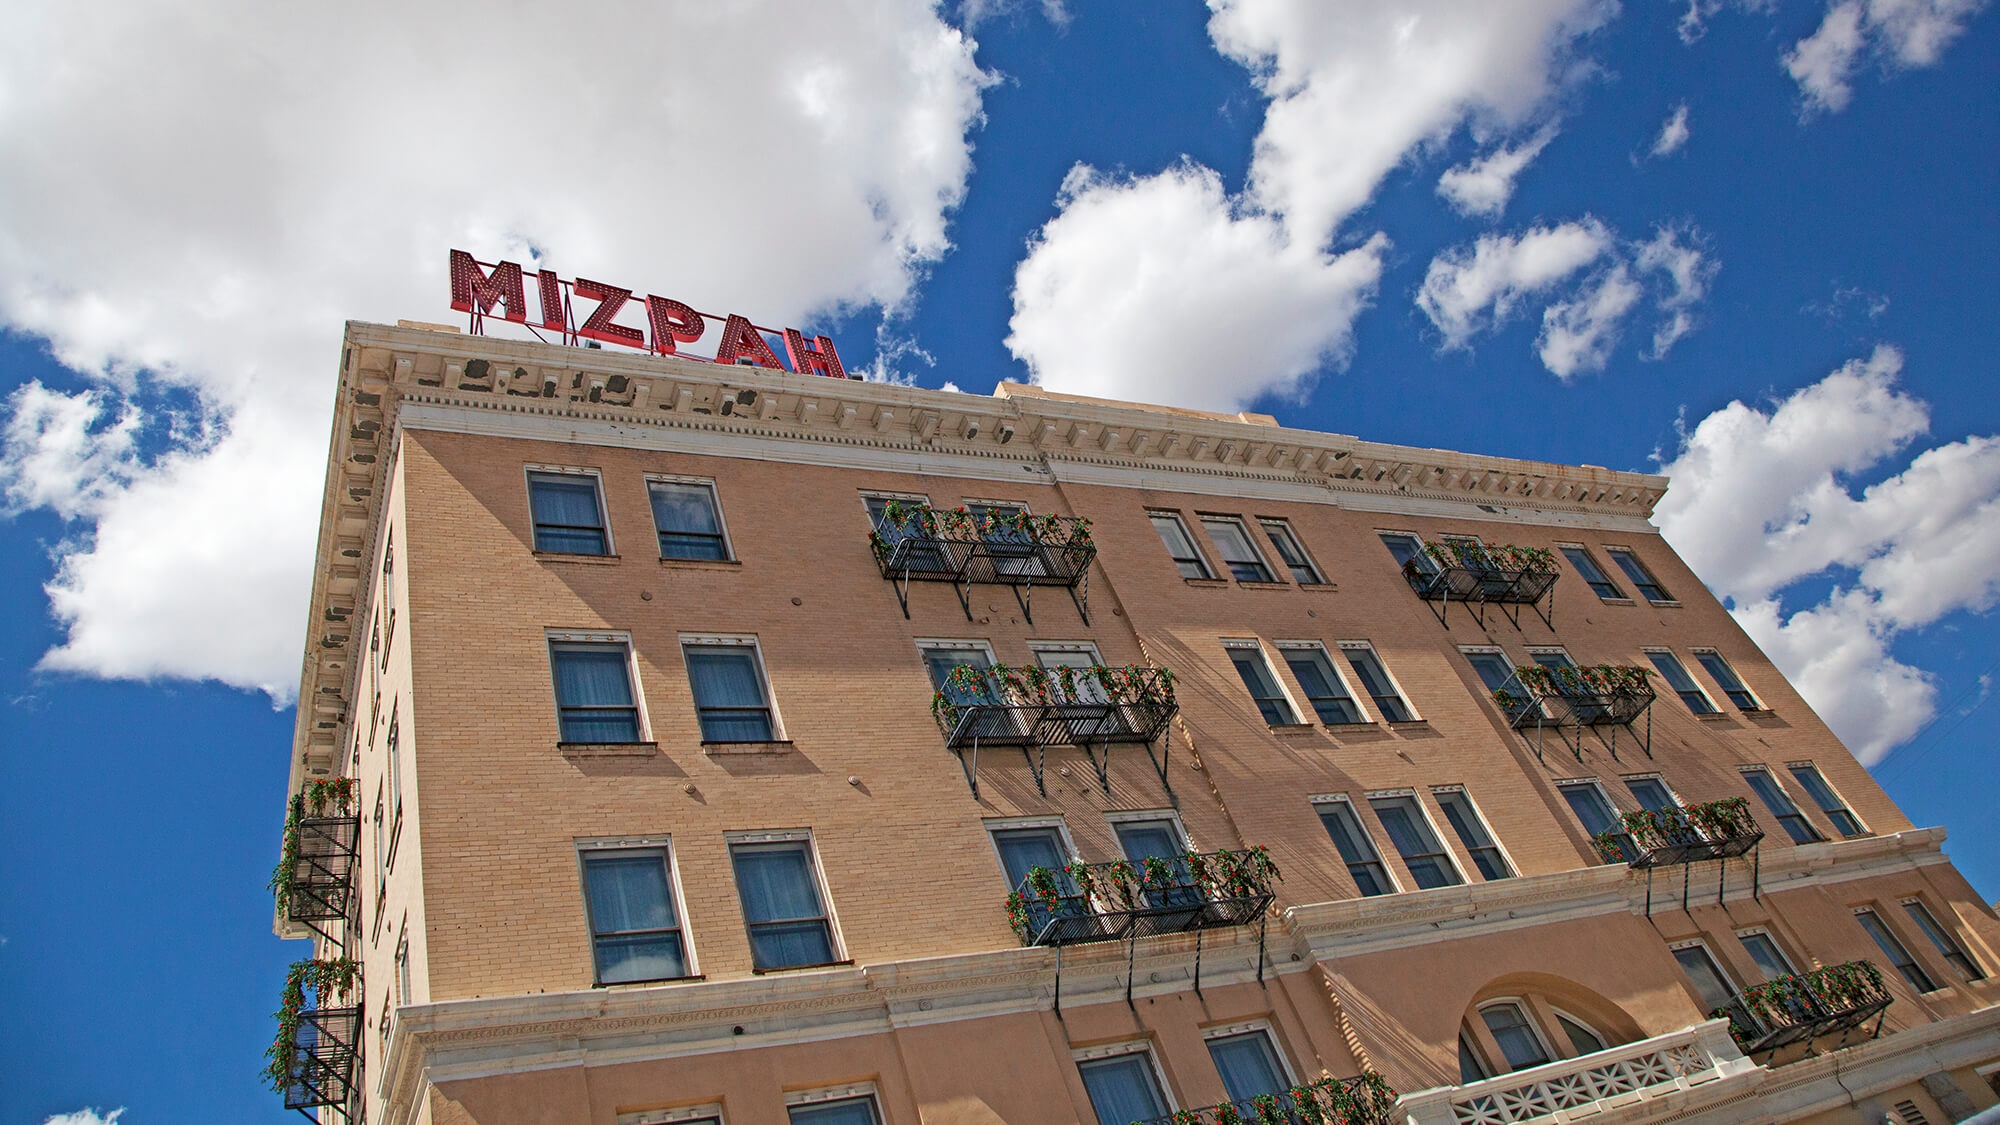  Das Mizpah Hotel